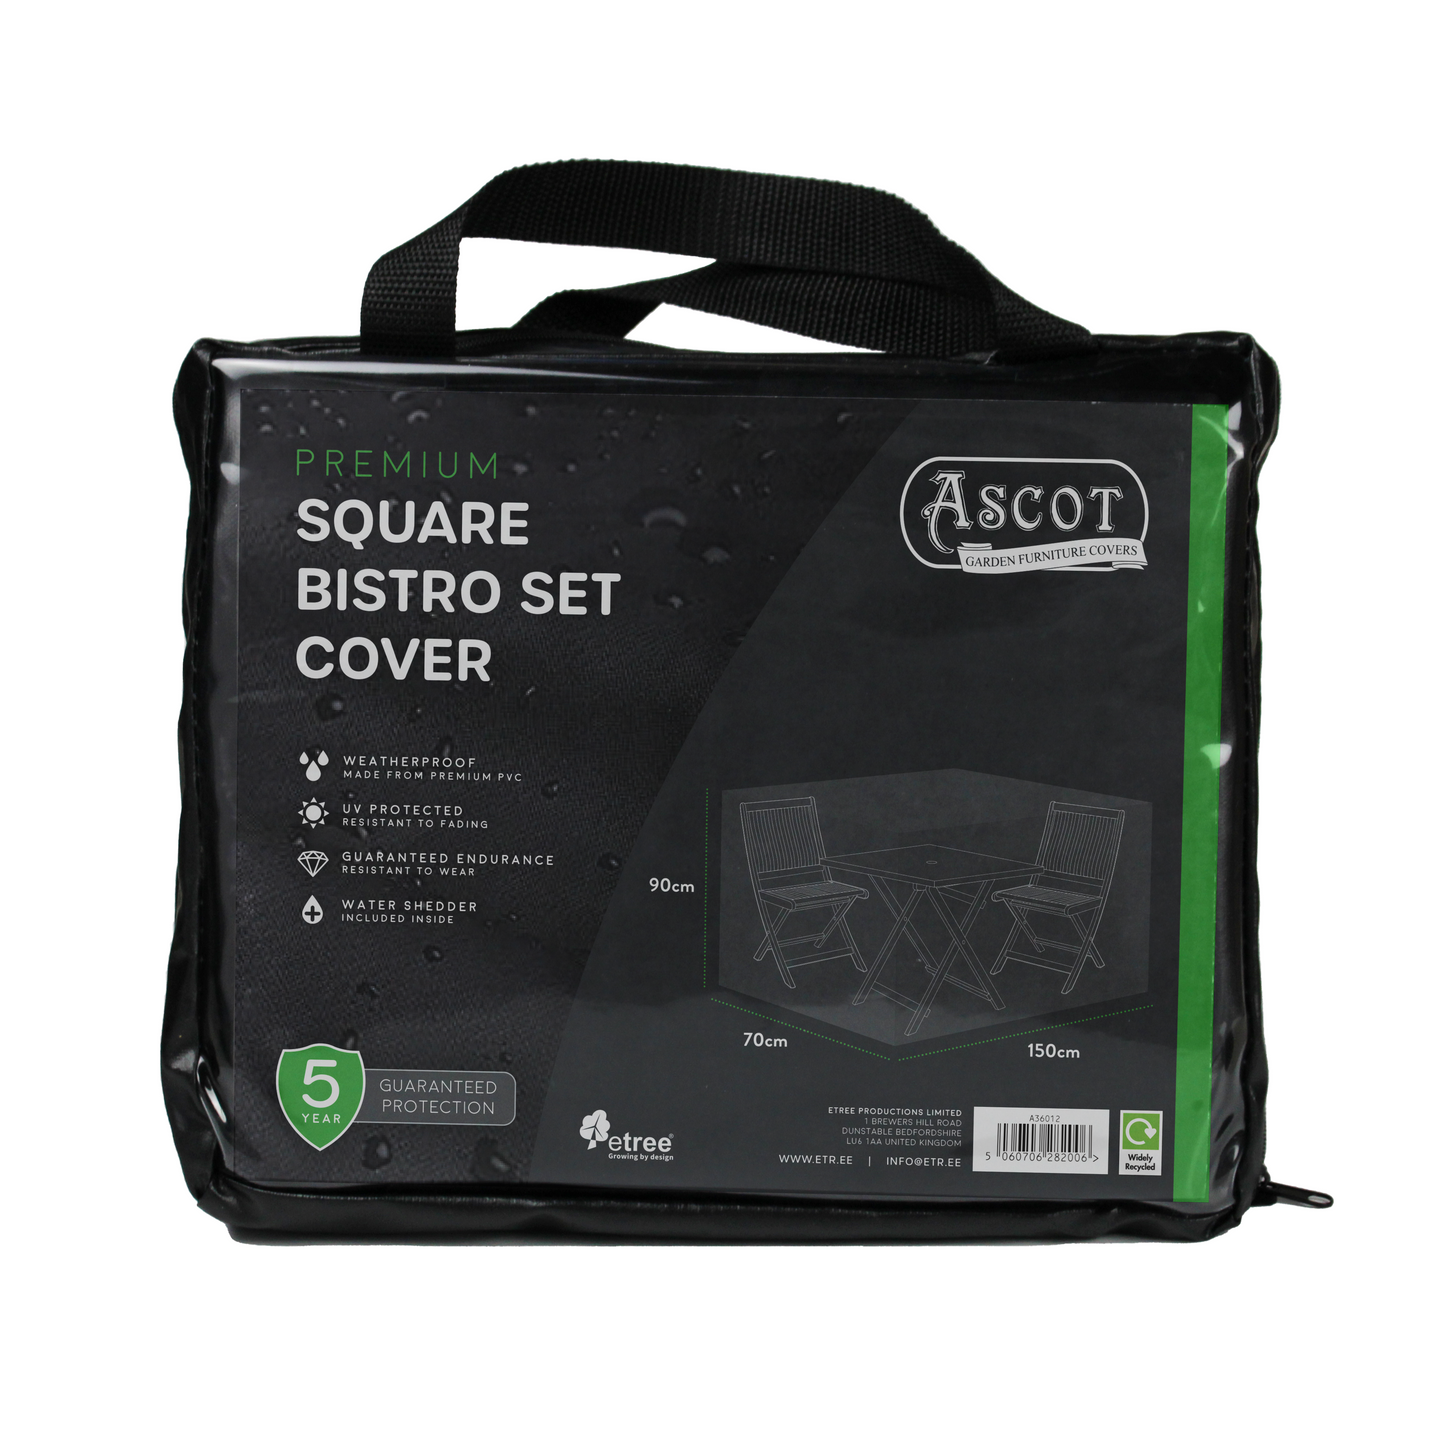 Premium Square Bistro Set Cover - 150 X 70 X 90 (H) cm